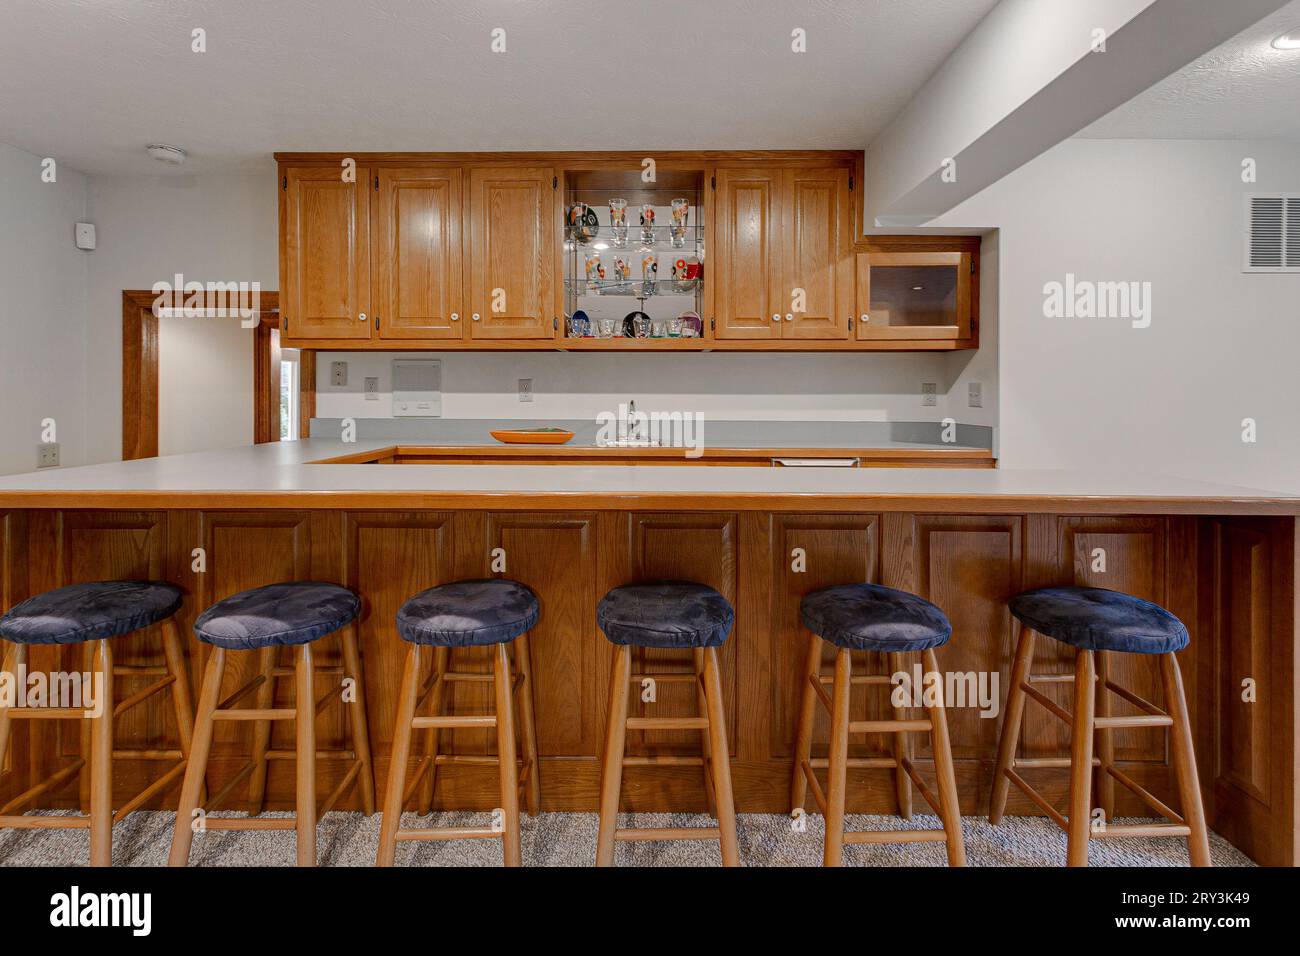 Kochnische im Barstil mit sechs Barstempeln und Long Island Counter. Holzschränke und minimales Styling Stockfoto